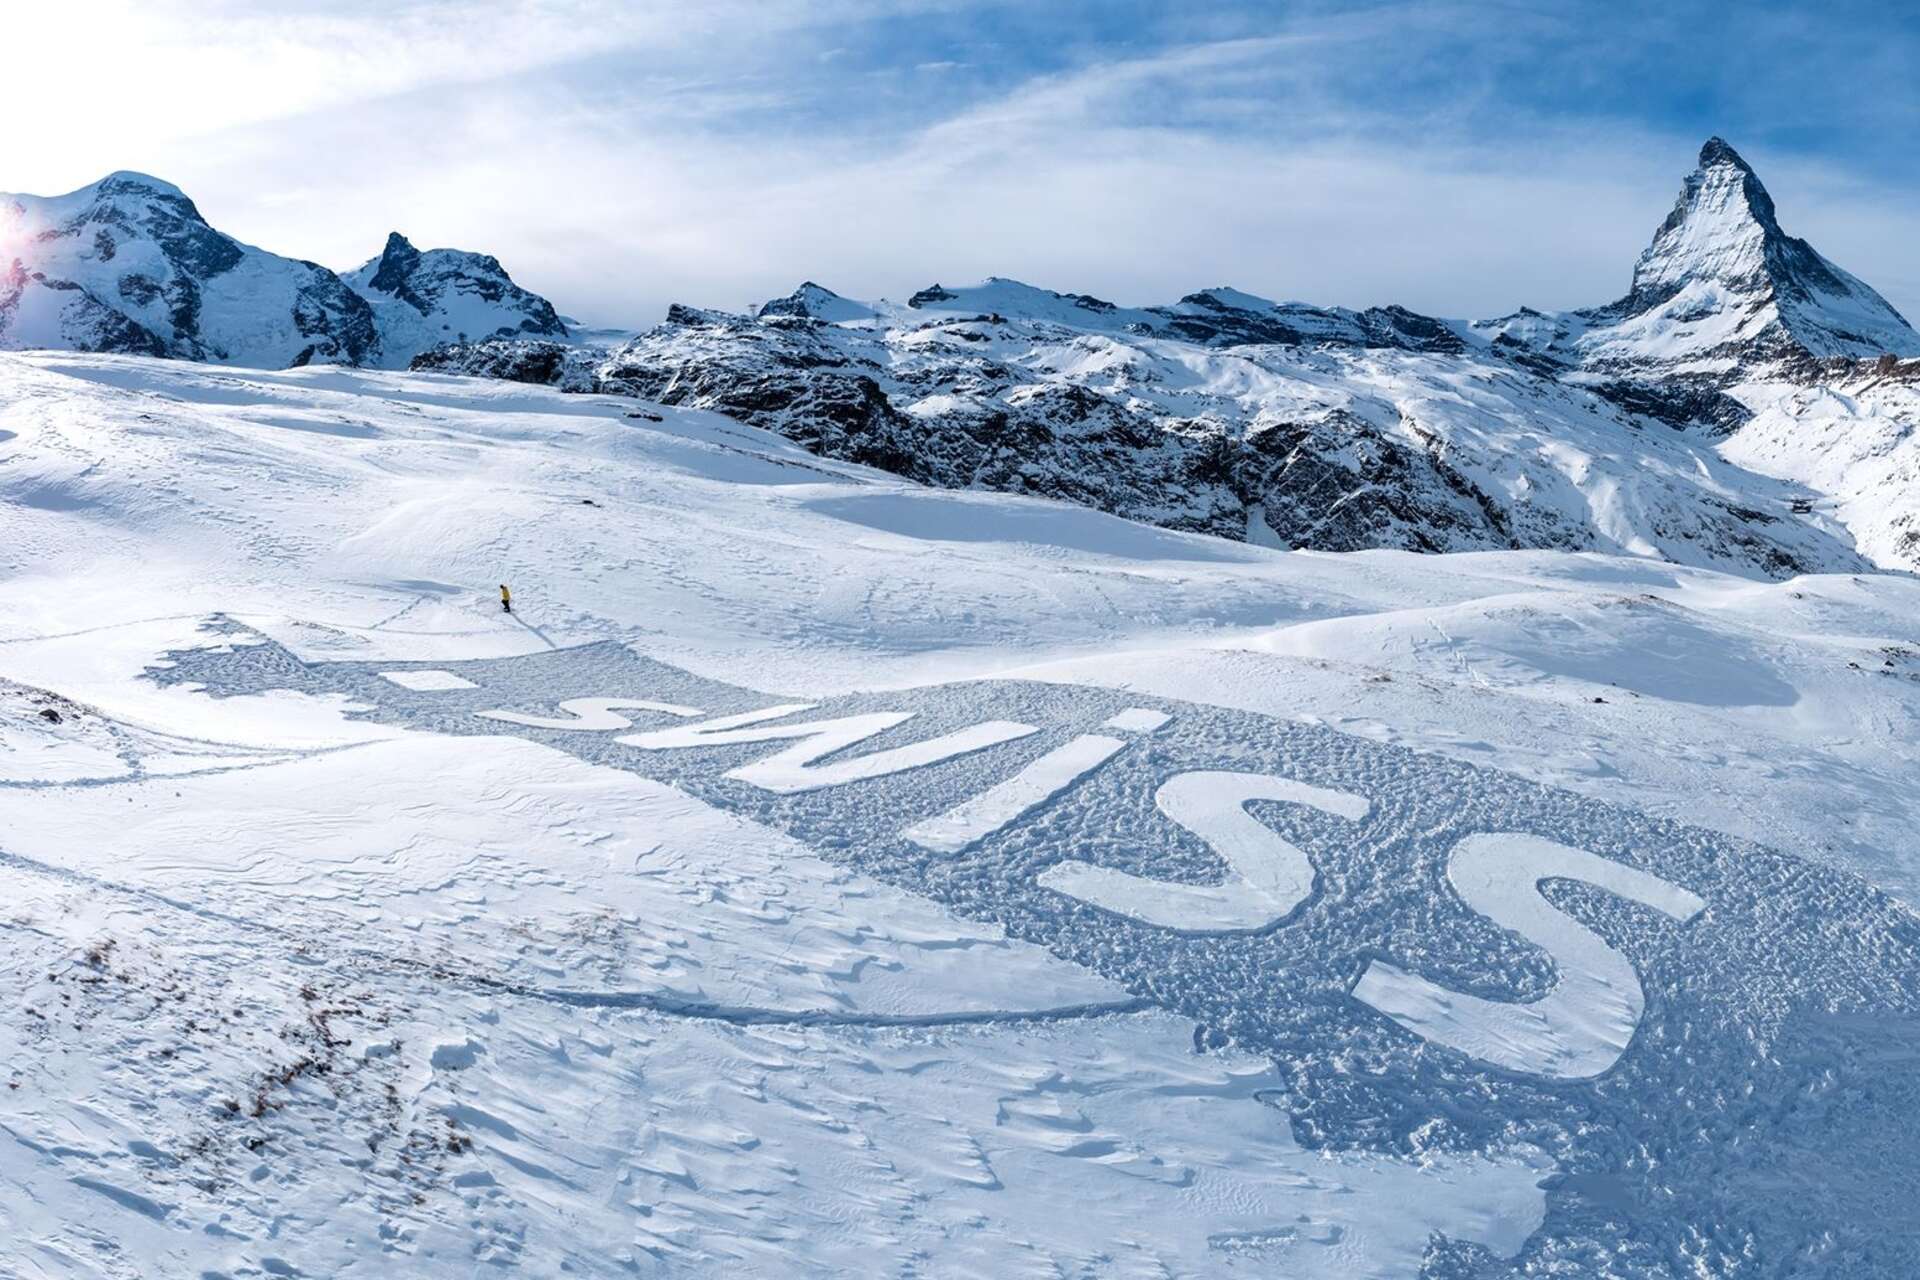 .swiss: il TLD “.swiss” della Svizzera rappresentato sulle nevi del ghiacciaio del monte Cervino